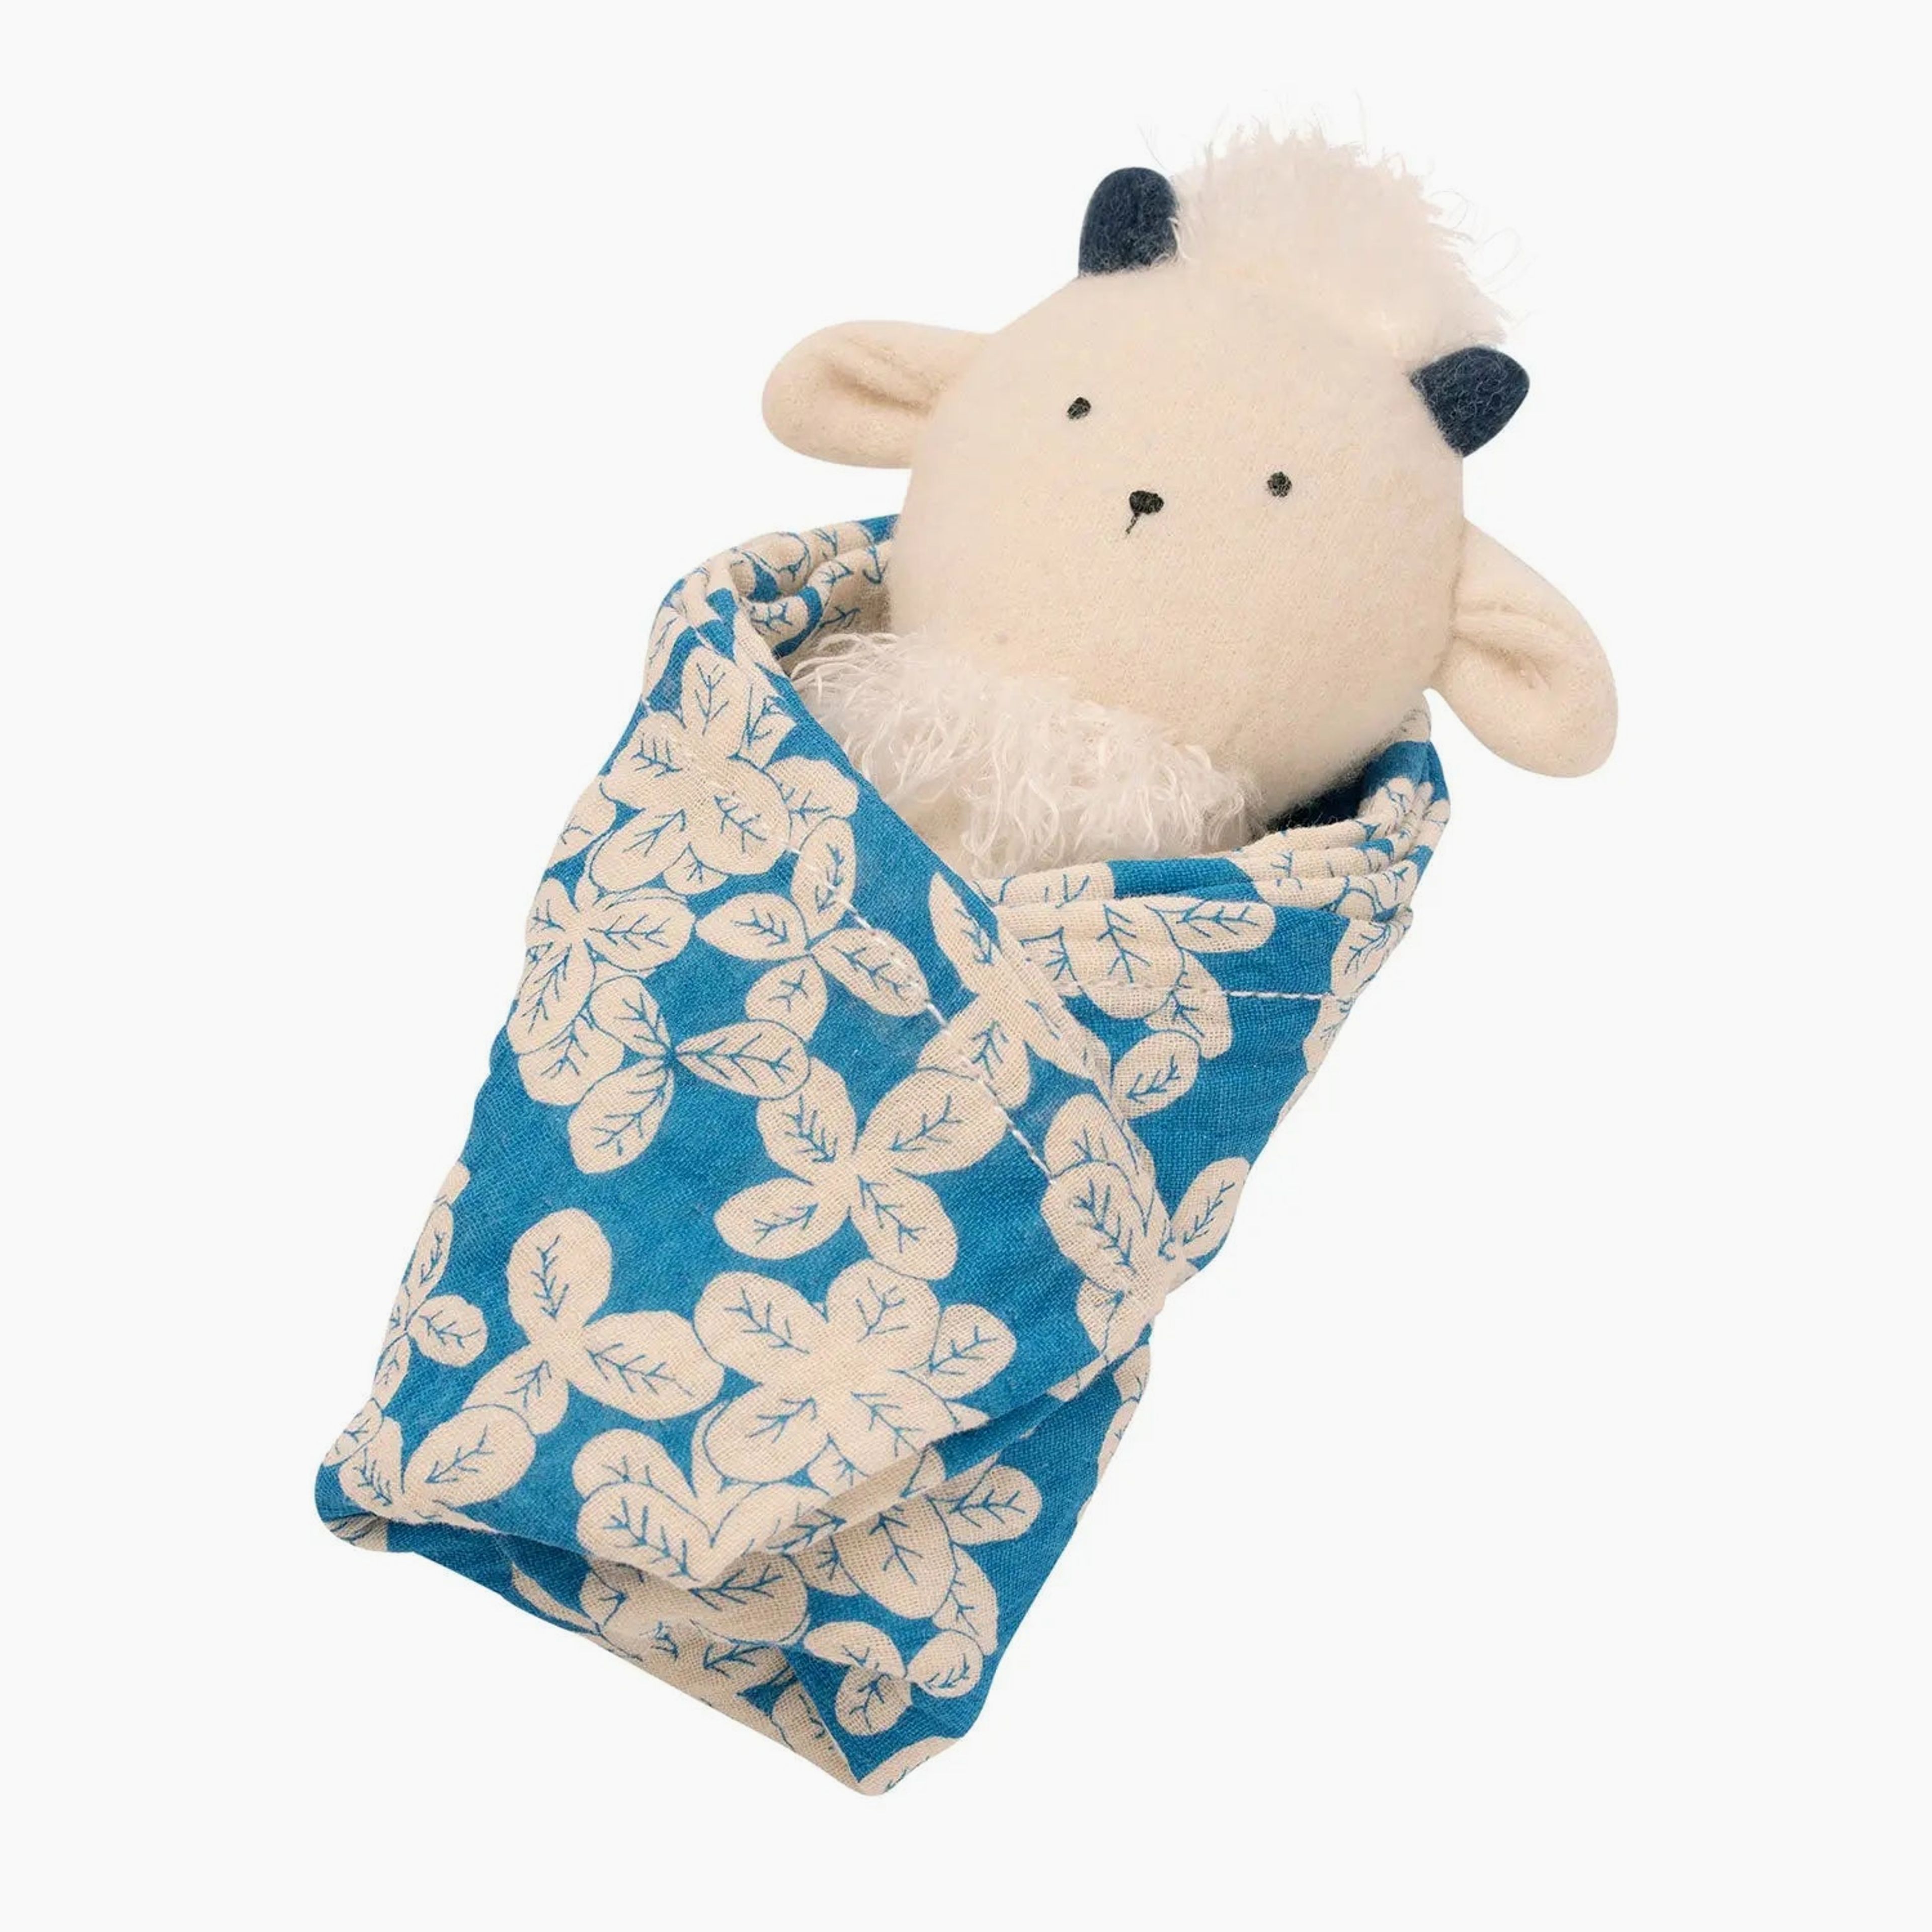 Goat Rattle + Burp Cloth Gift Set For Infants